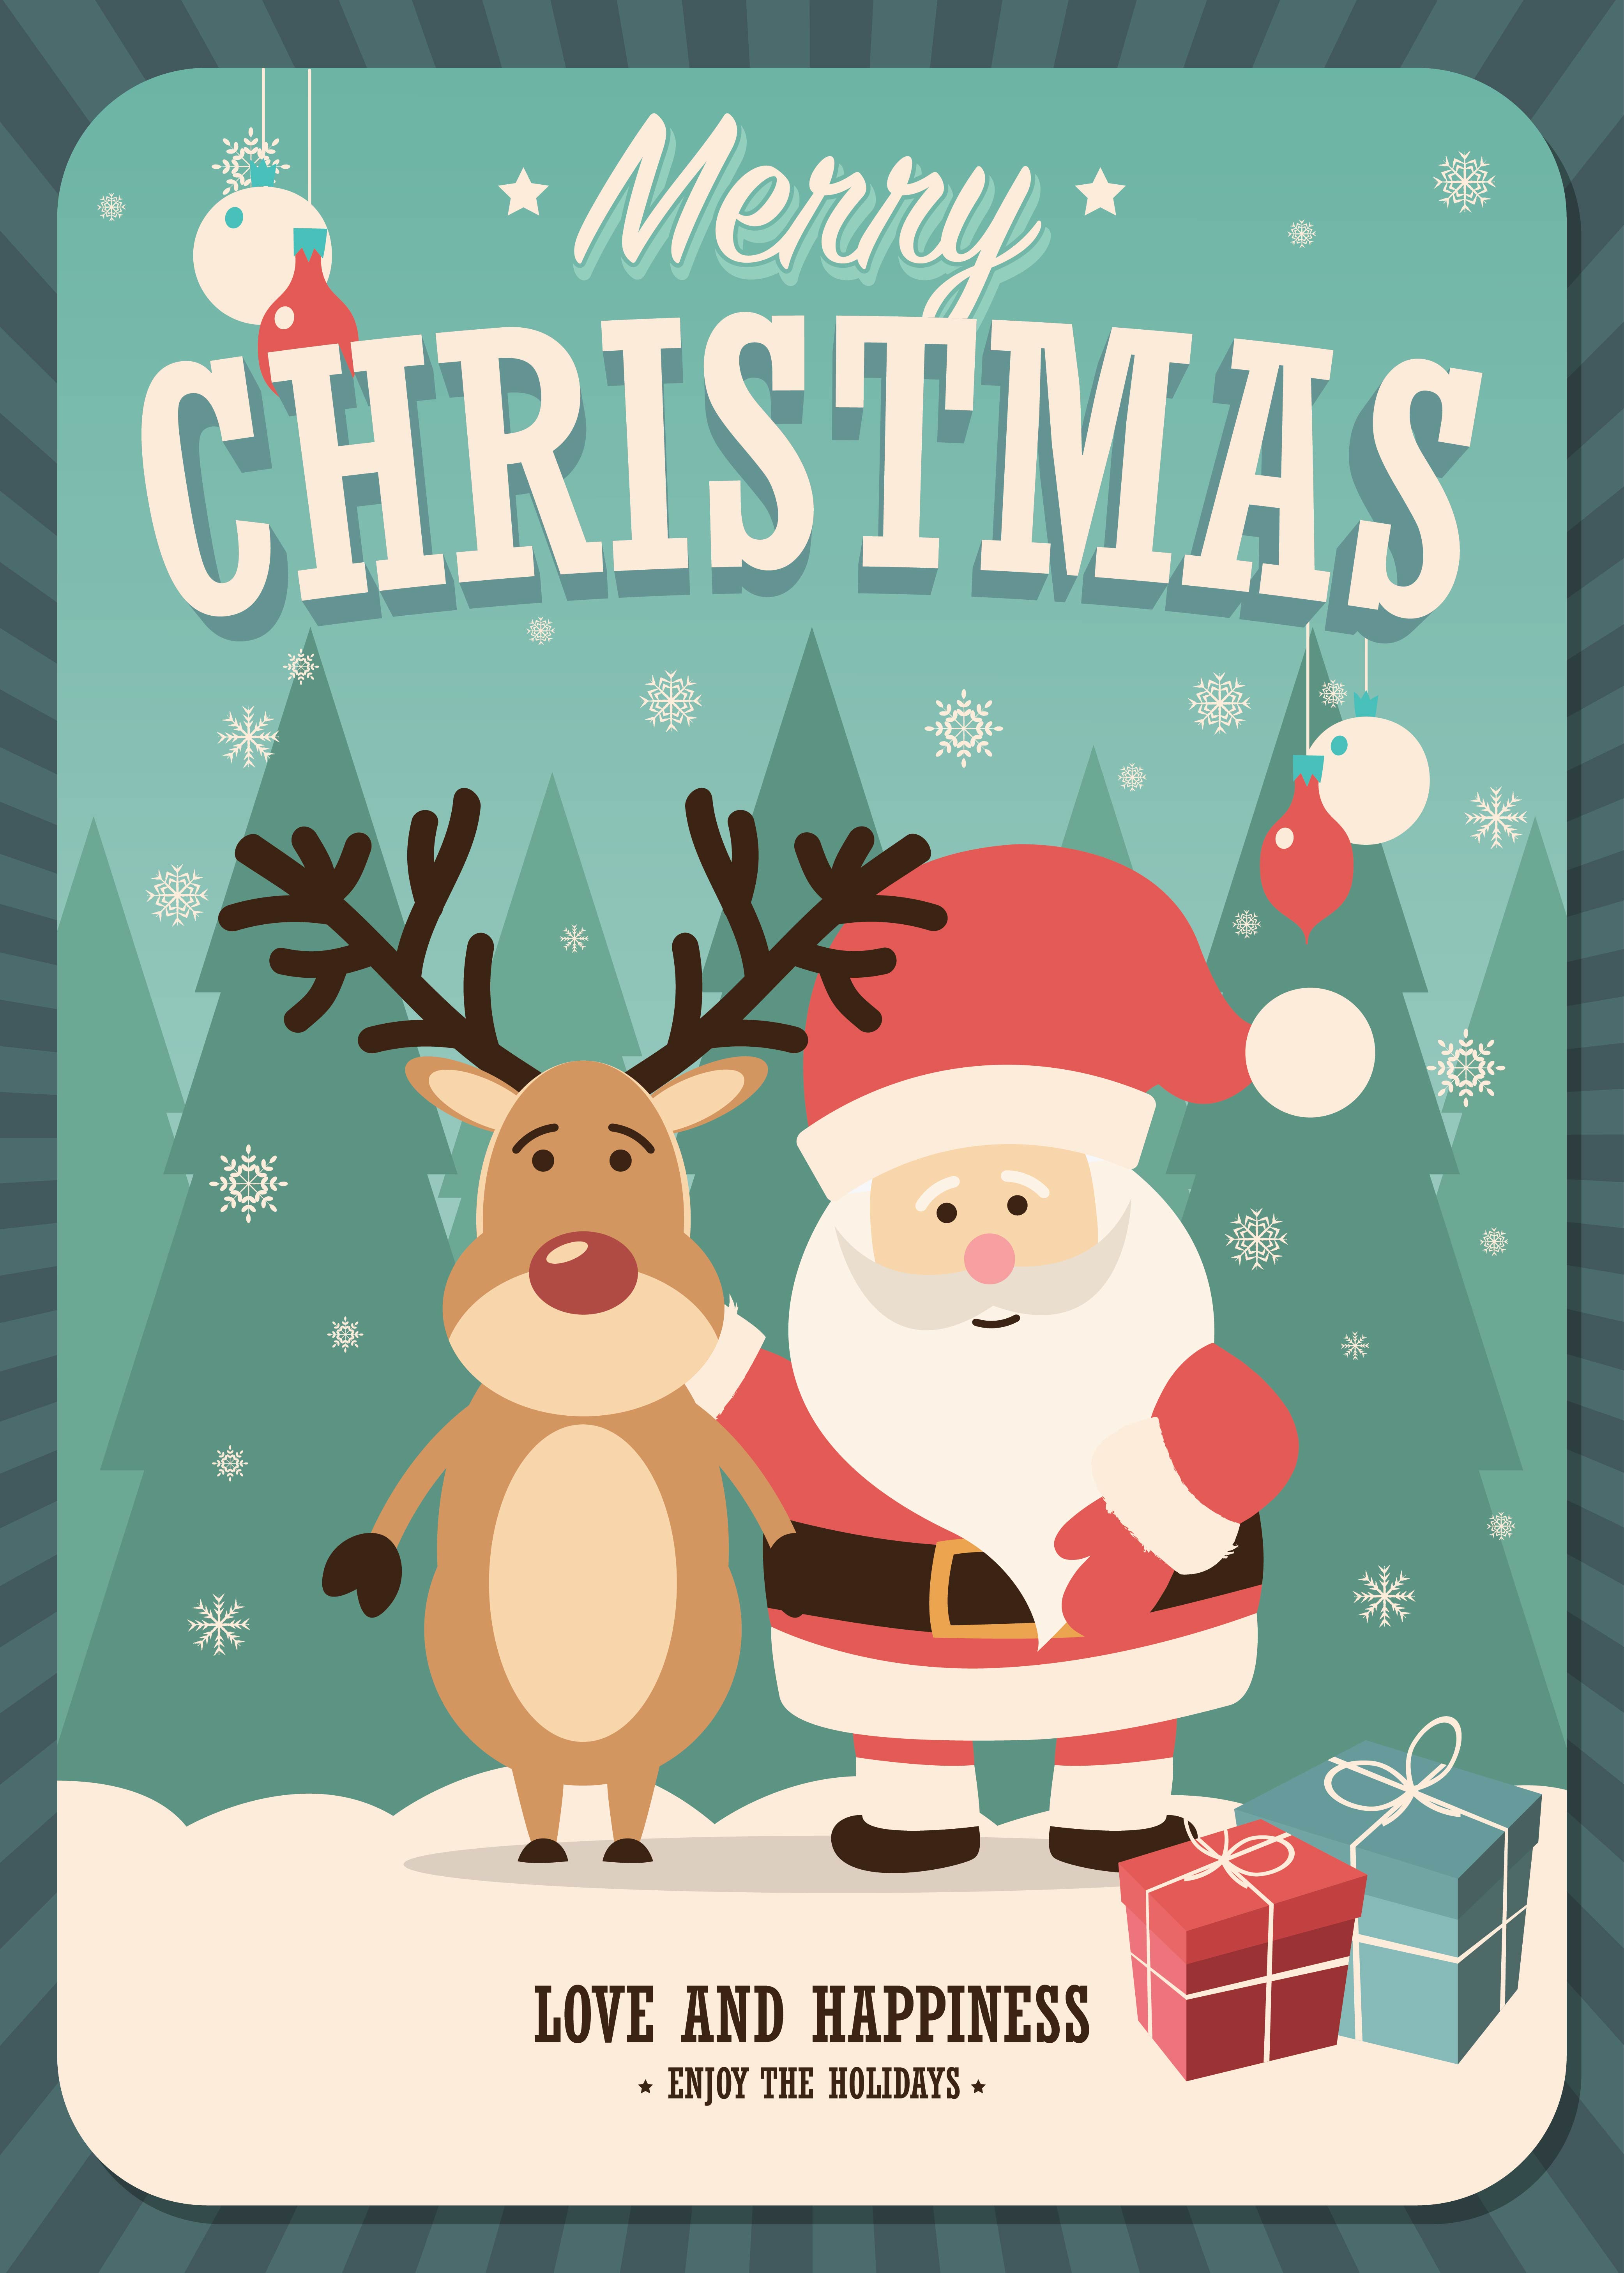 printable-my-christmas-wish-list-for-santa